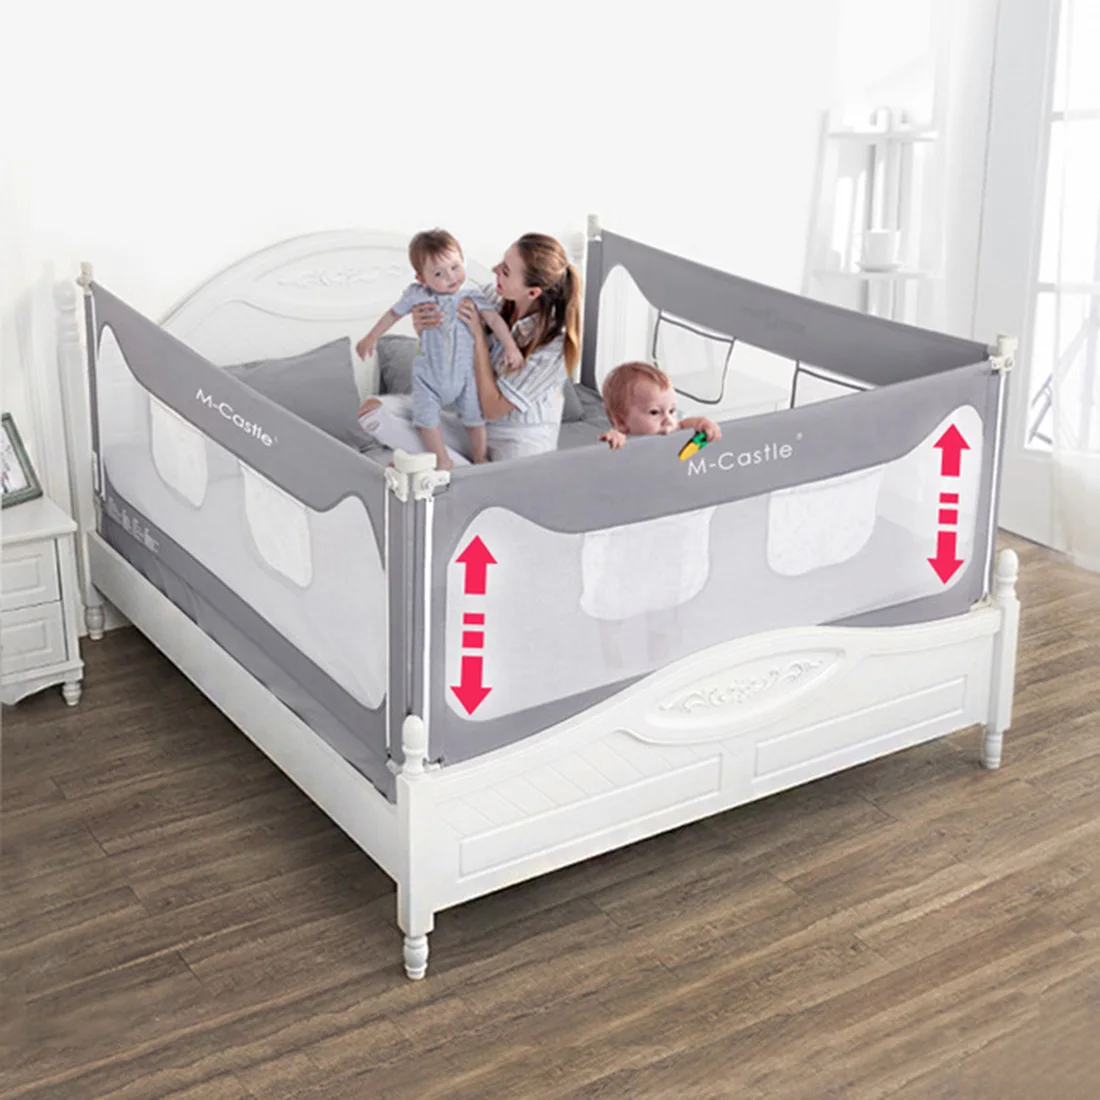 1,8 м детская кровать рельс защита вертикального подъема защита от падения кровать-рельс для кроватки рельсы безопасности ограждение ребенка безопасный предохранитель